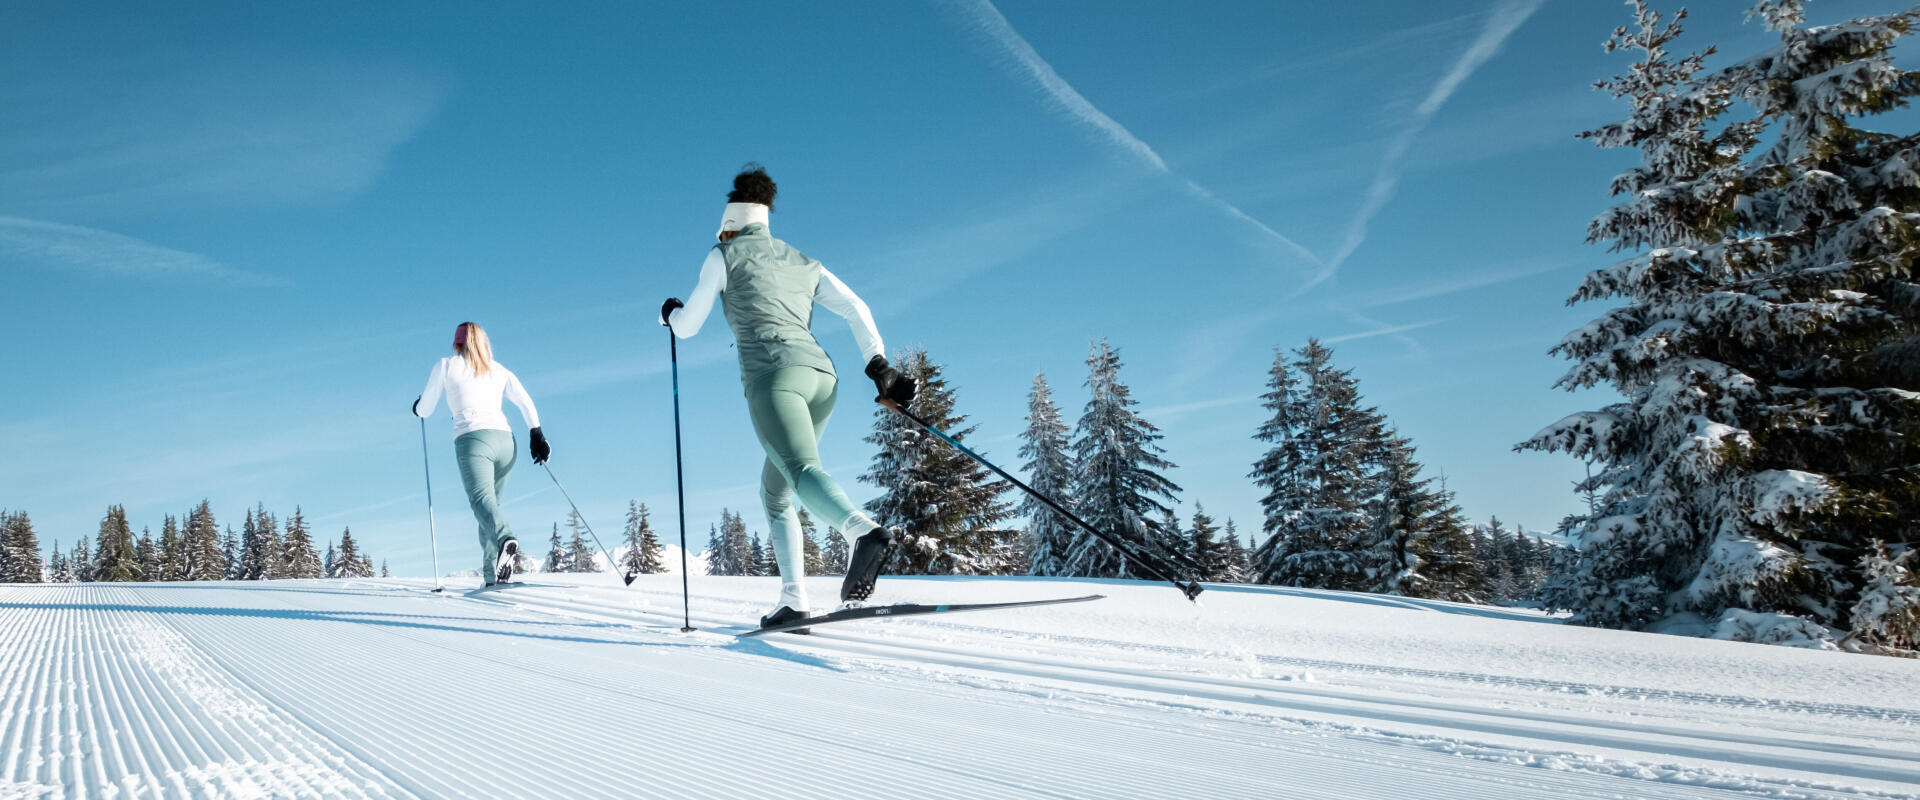 Premières couches pour hommes Ski: vestes légères, collants